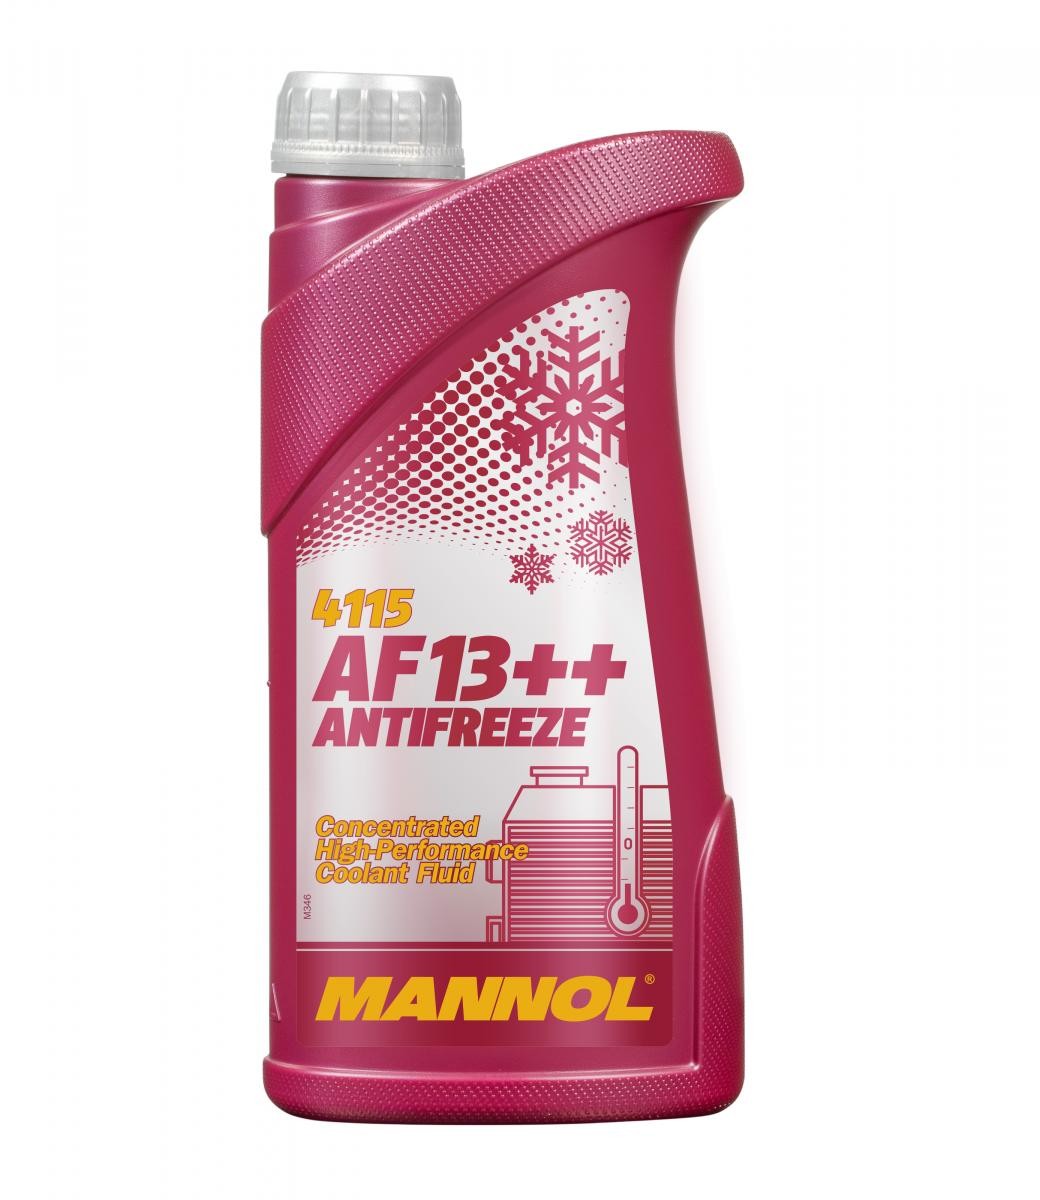 KAWASAKI ER Kühlmittel G12 Rot, 1l, -38(50/50) MANNOL AF13++, High-performance MN4115-1